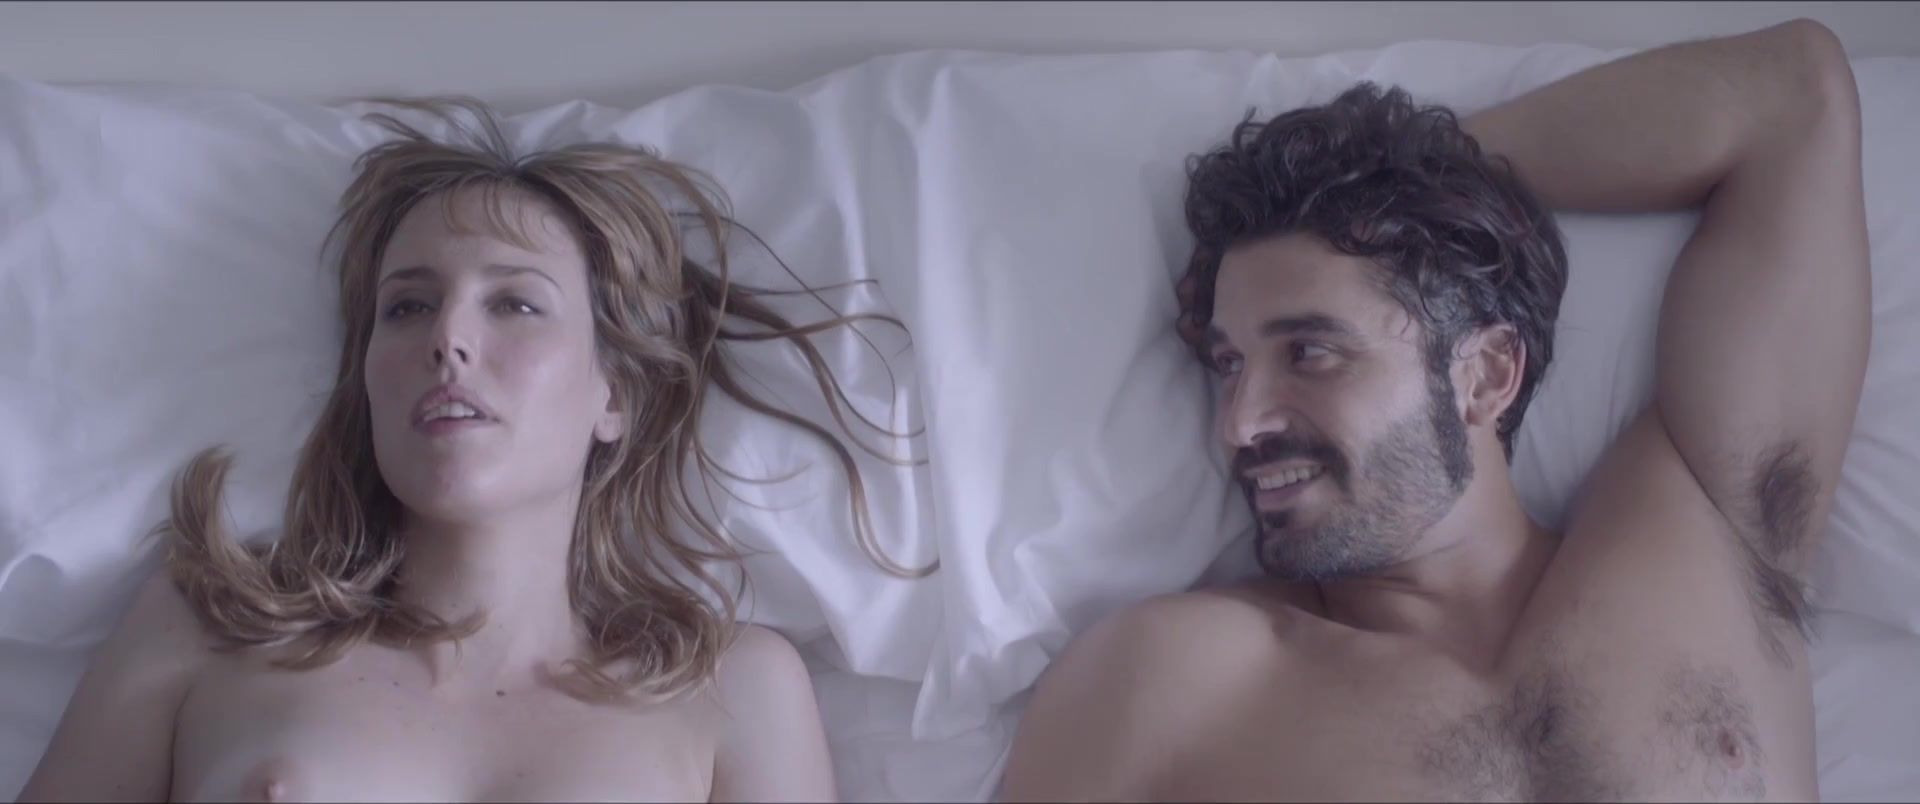 Avy Scott Natalia de Molina - Kiki, el amor se hace (2016) Amigo